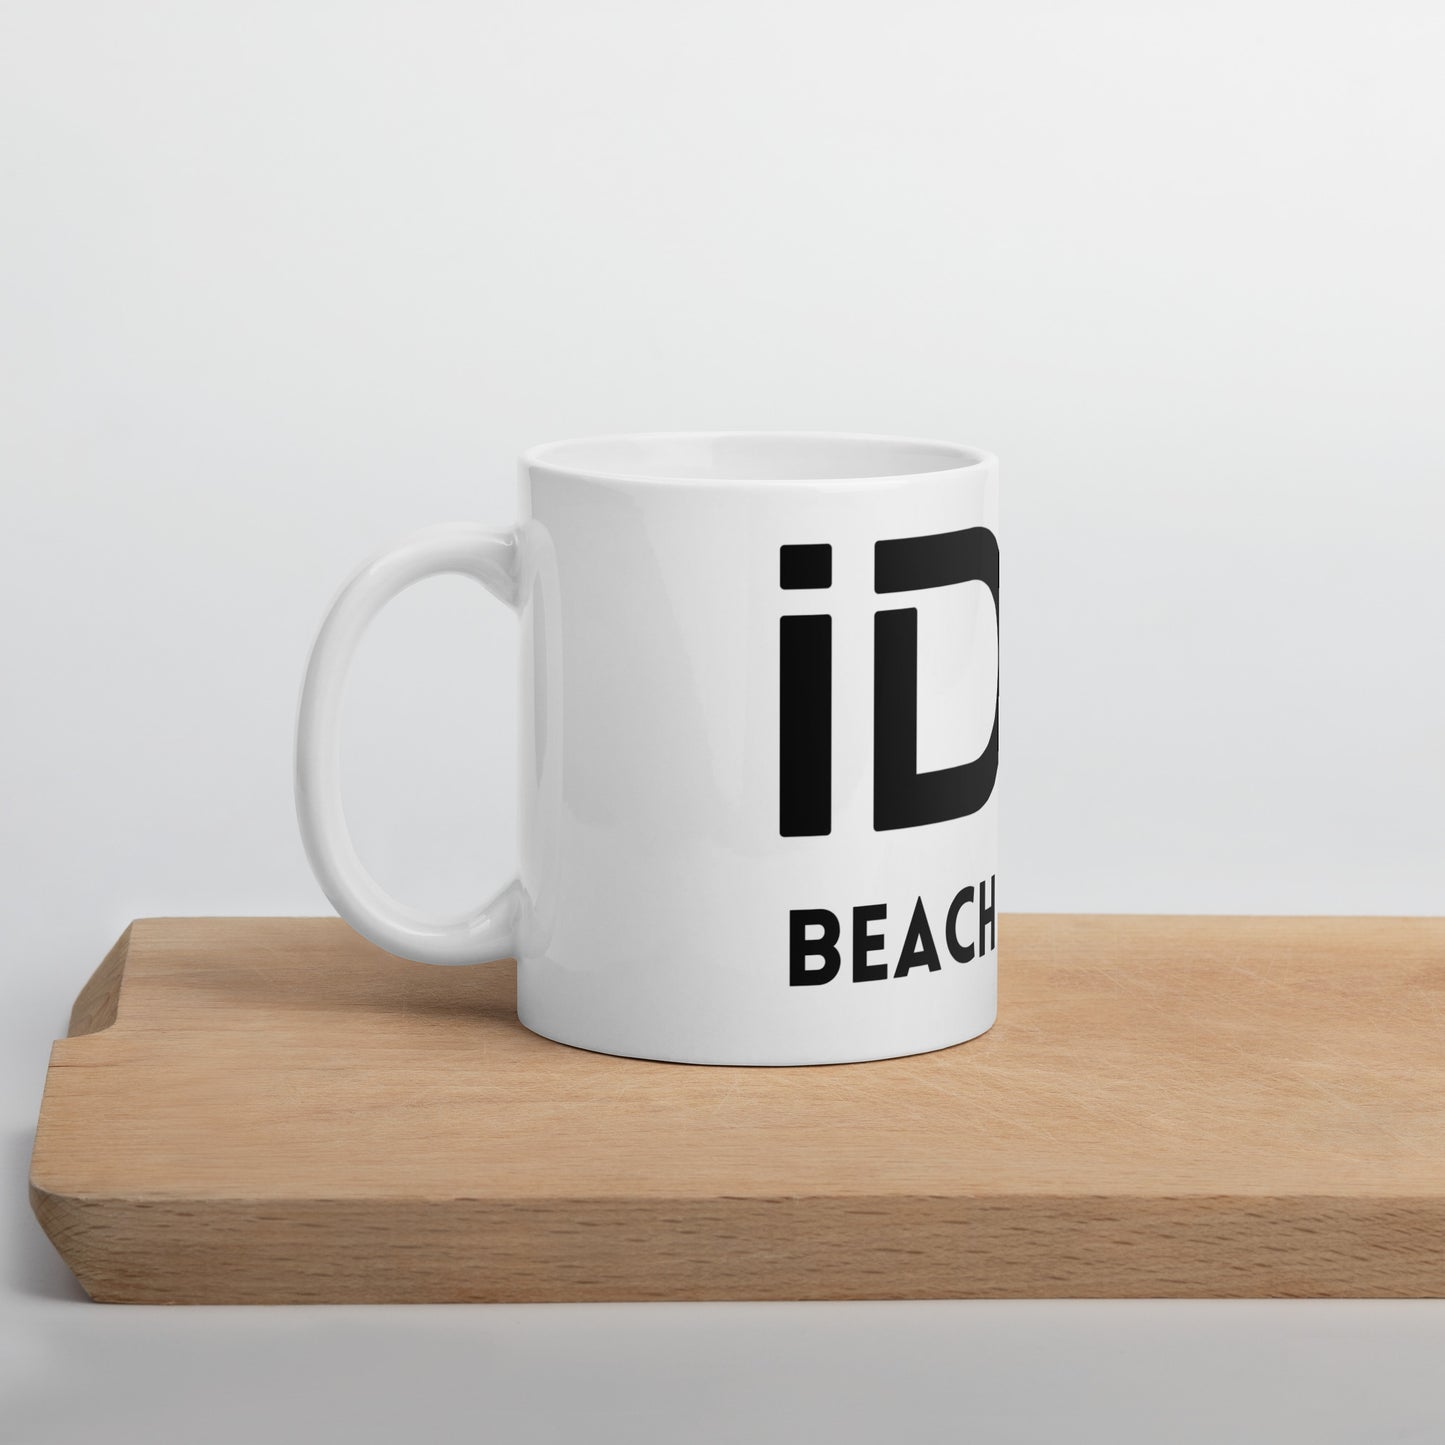 I Do Beach Tennis  - Mugs